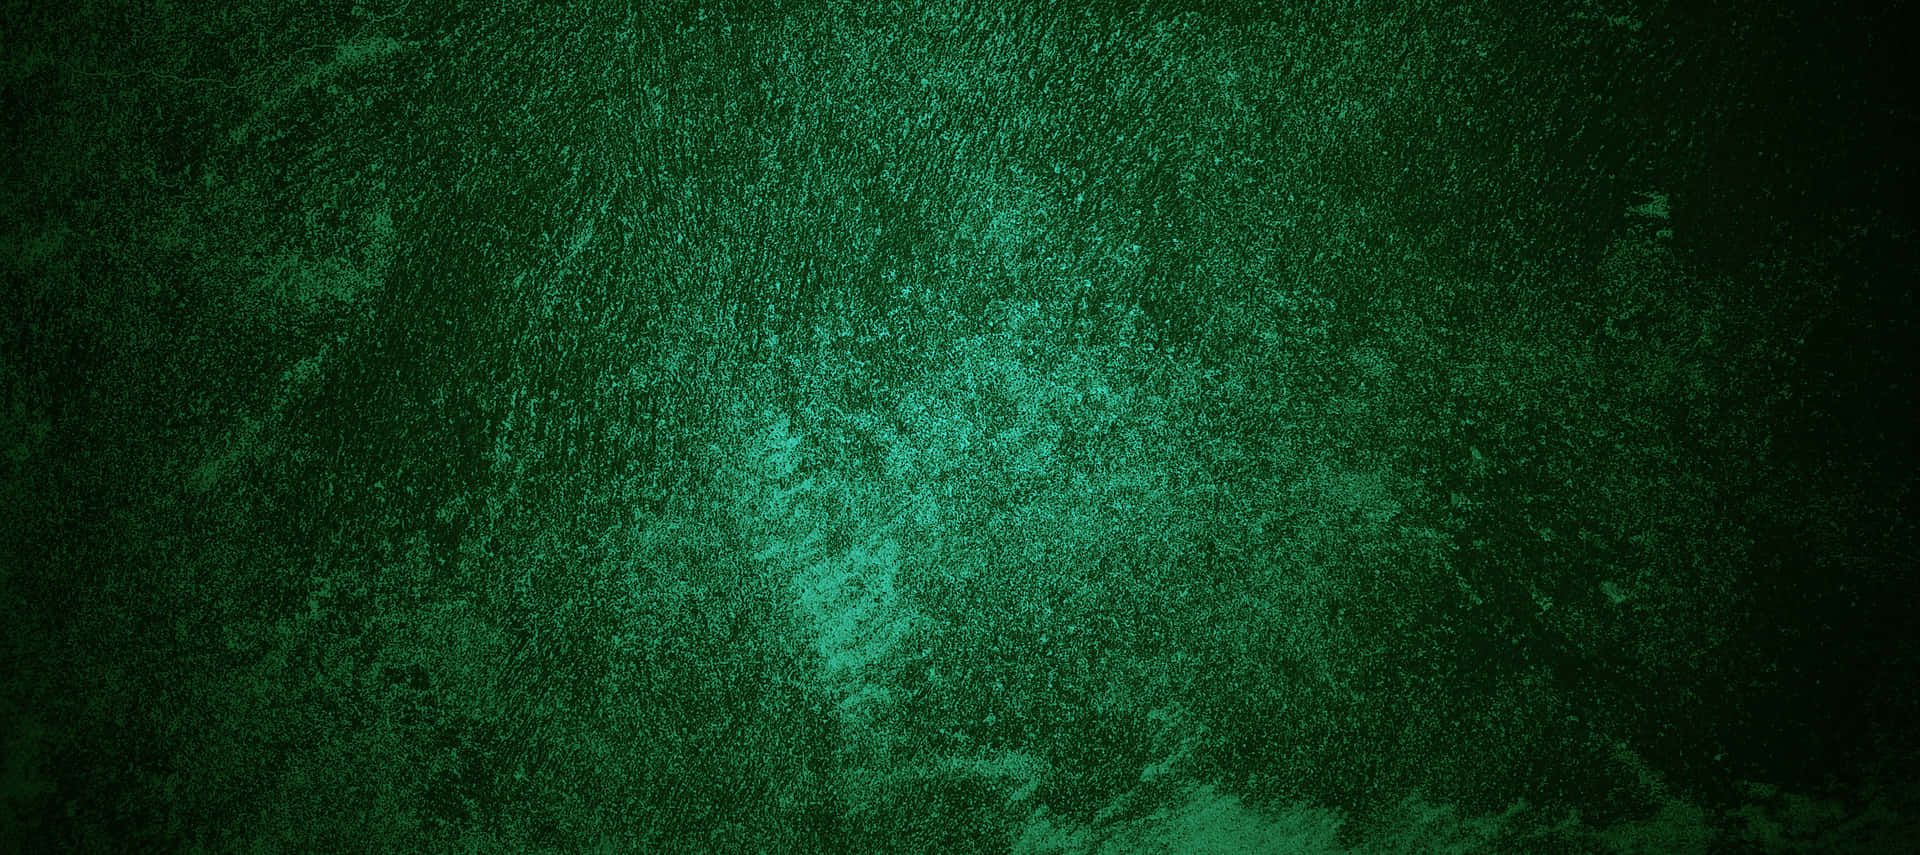 Dark Green Background Gradient with Lush Flora